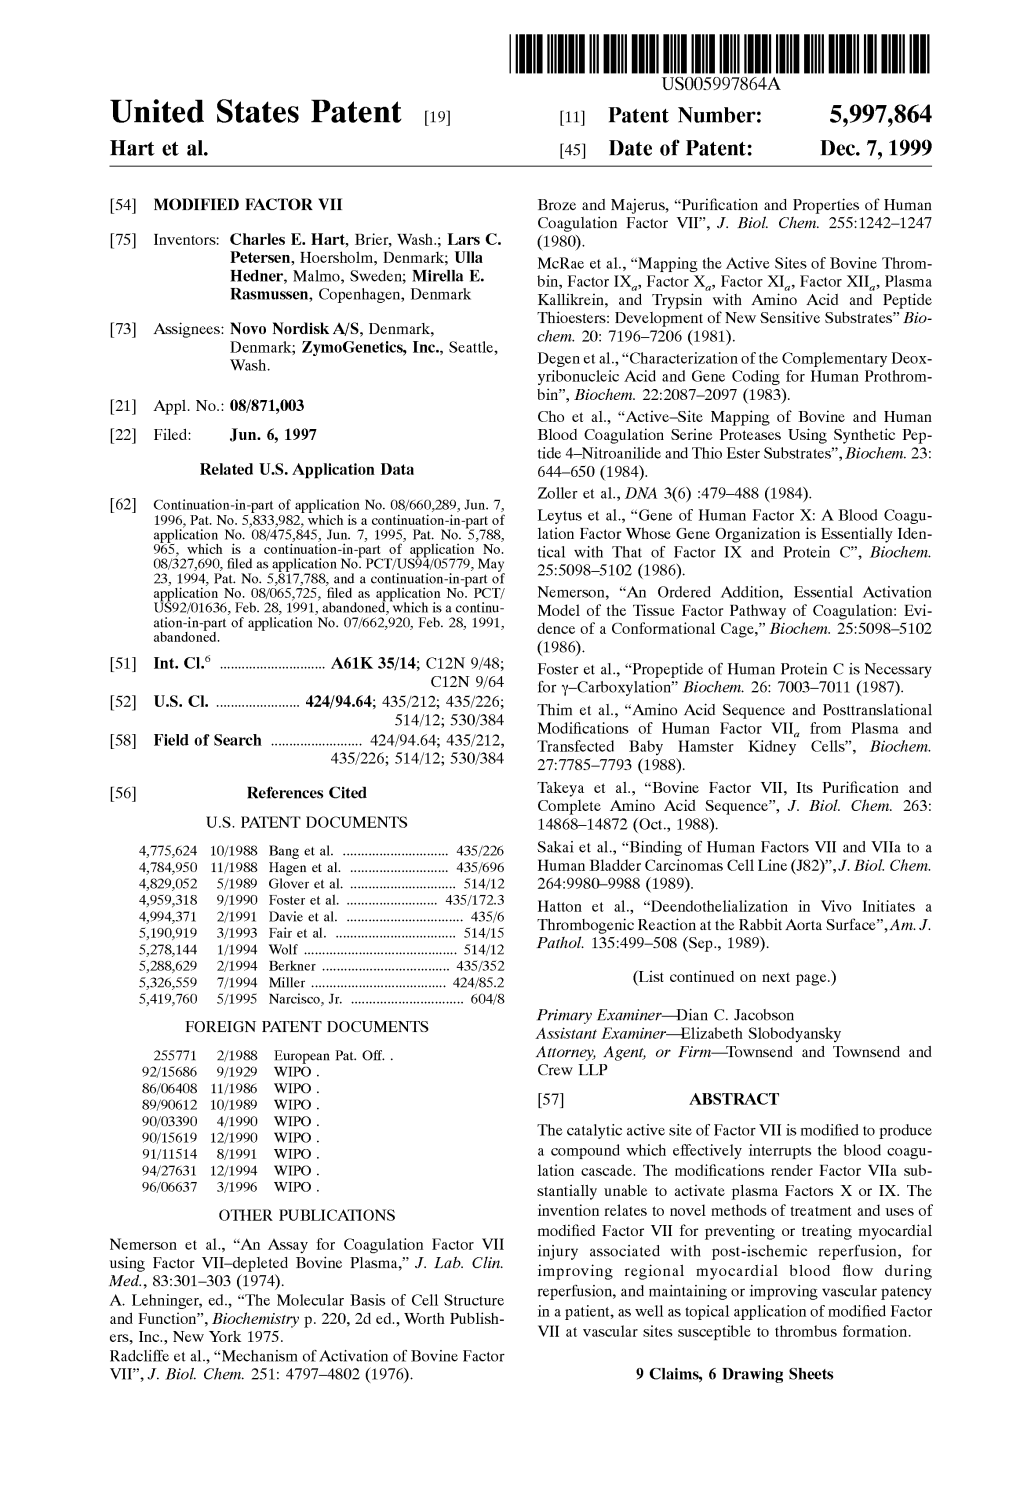 United States Patent (19) 11 Patent Number: 5,997,864 Hart Et Al